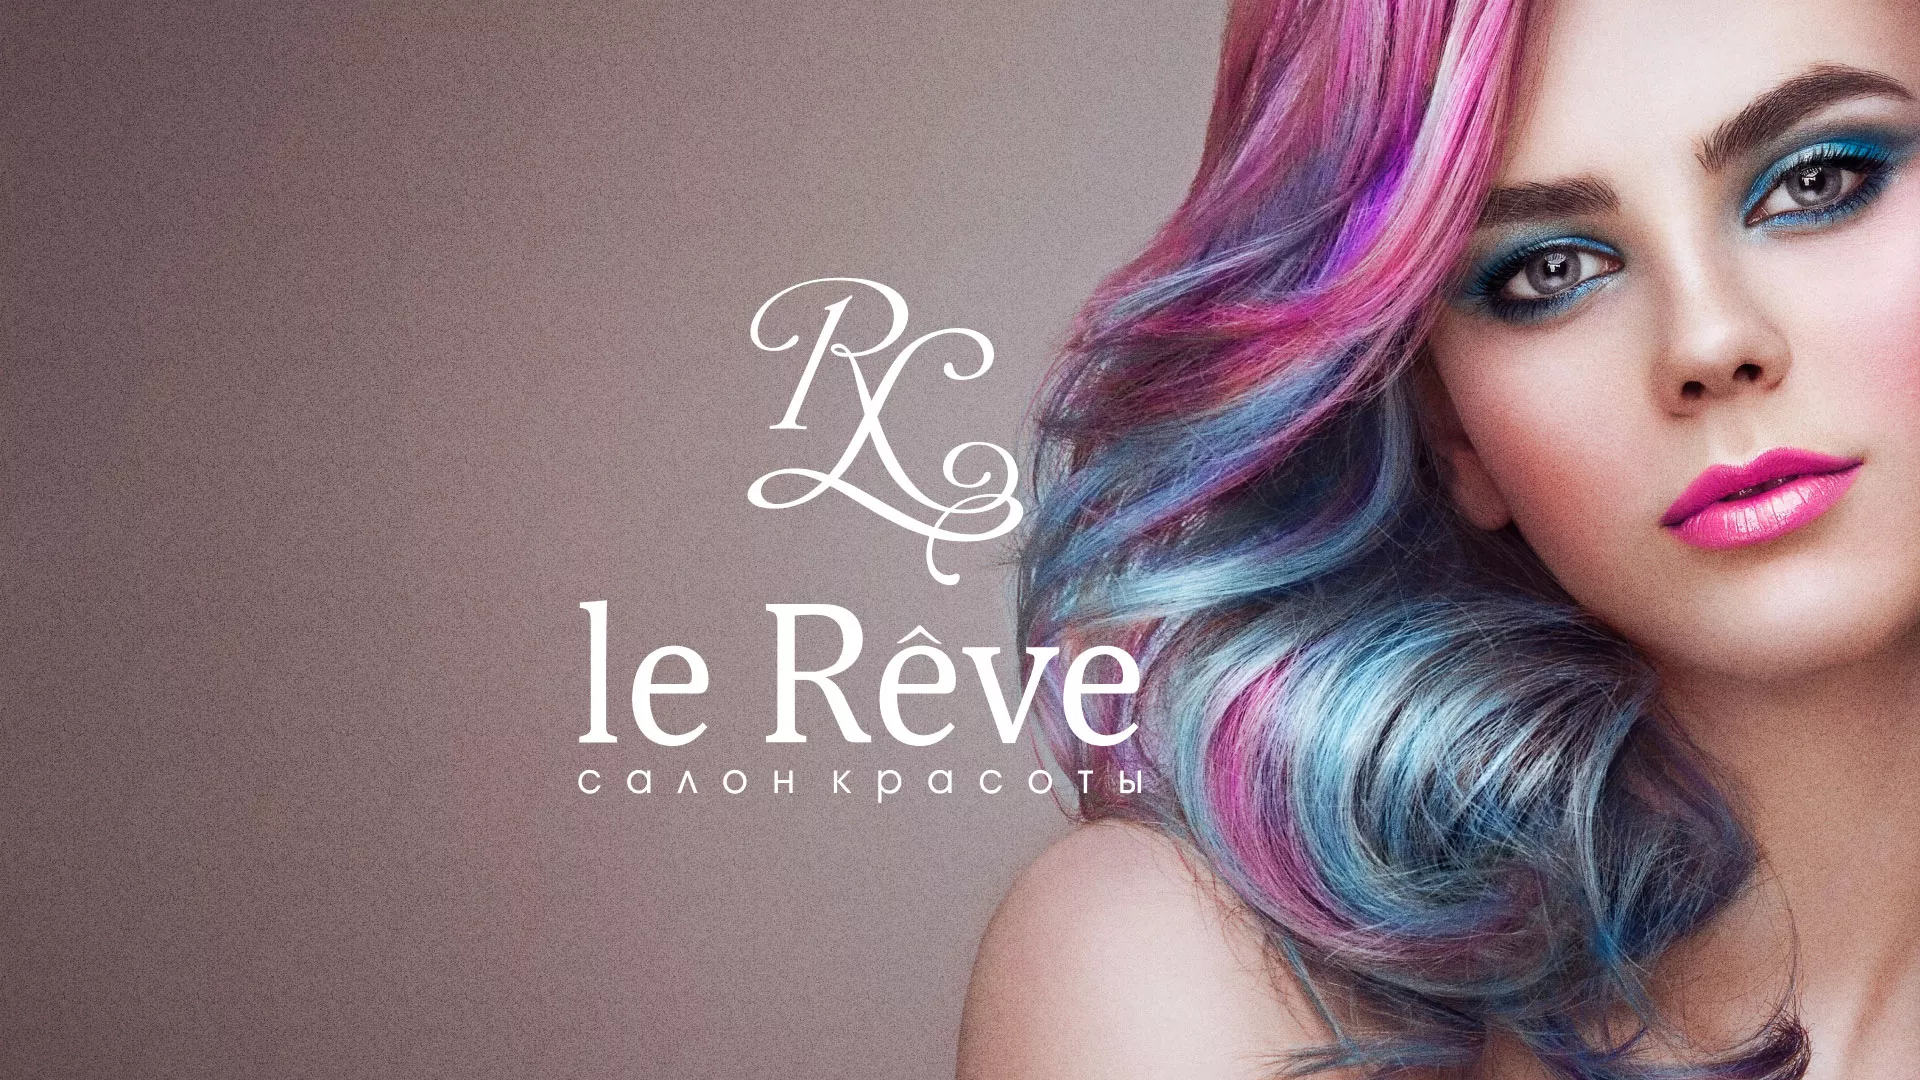 Создание сайта для салона красоты «Le Reve» в Макушино